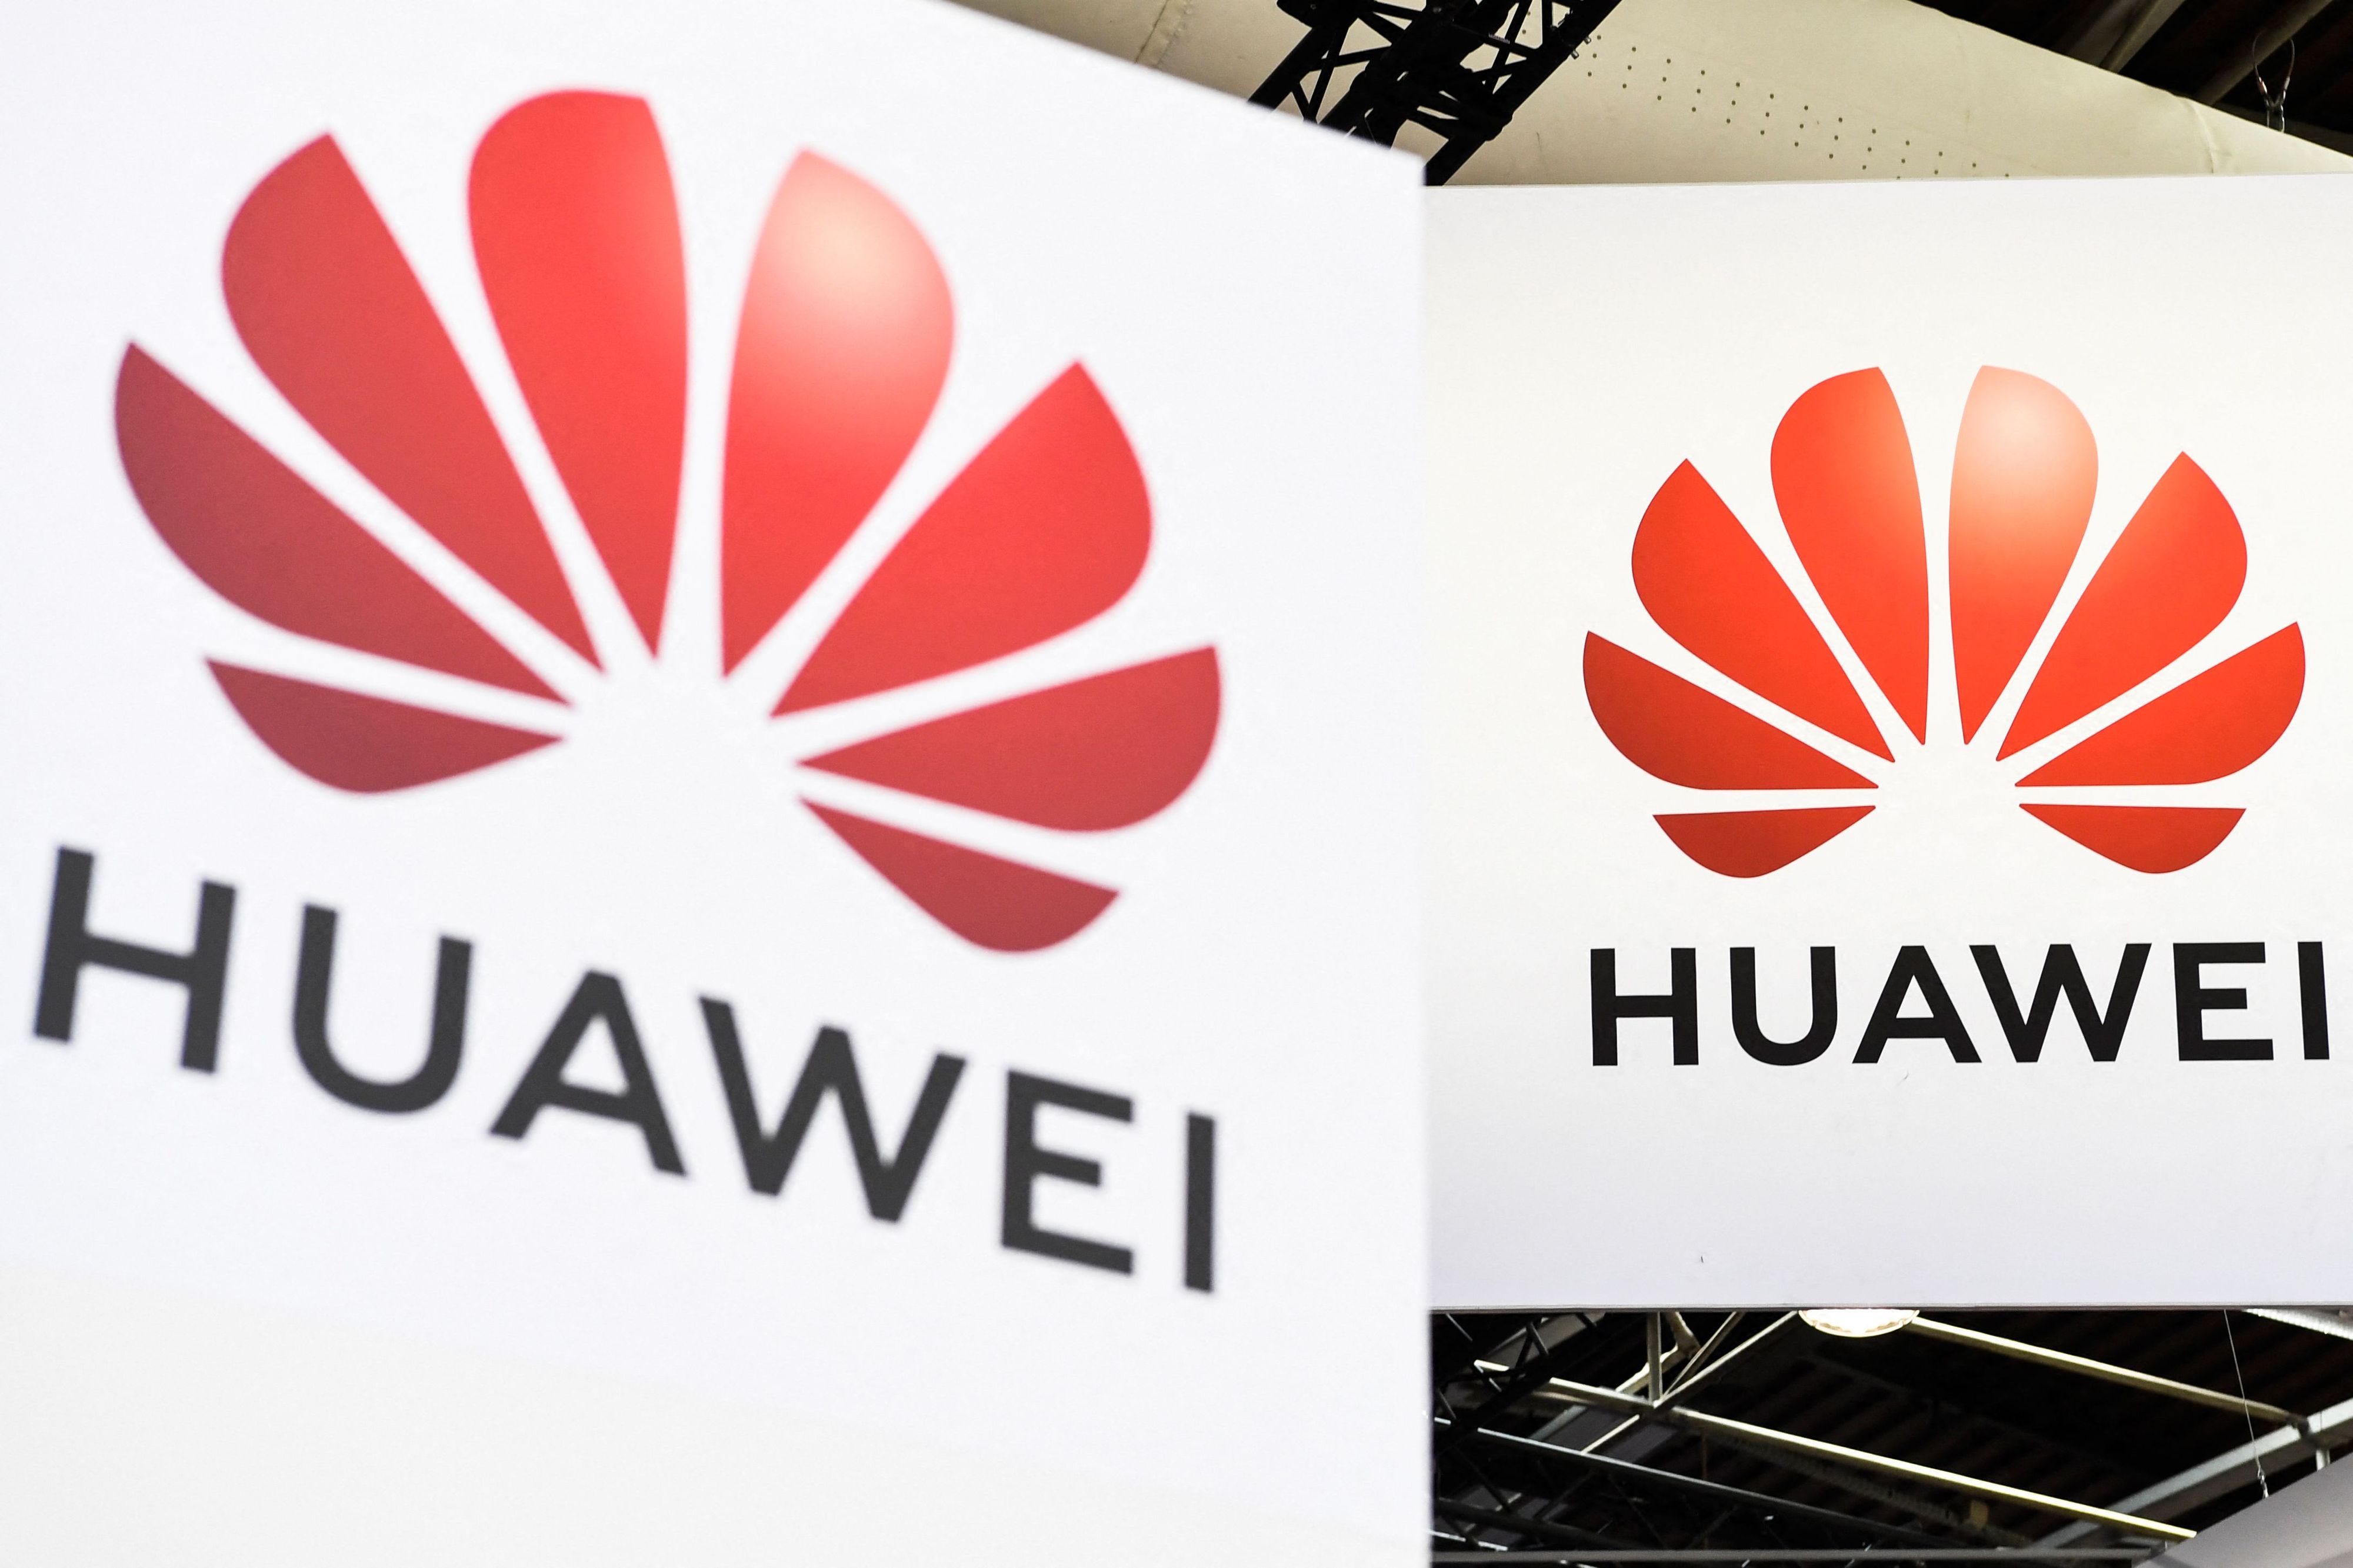 Les bureaux de Huawei perquisitionnés en France